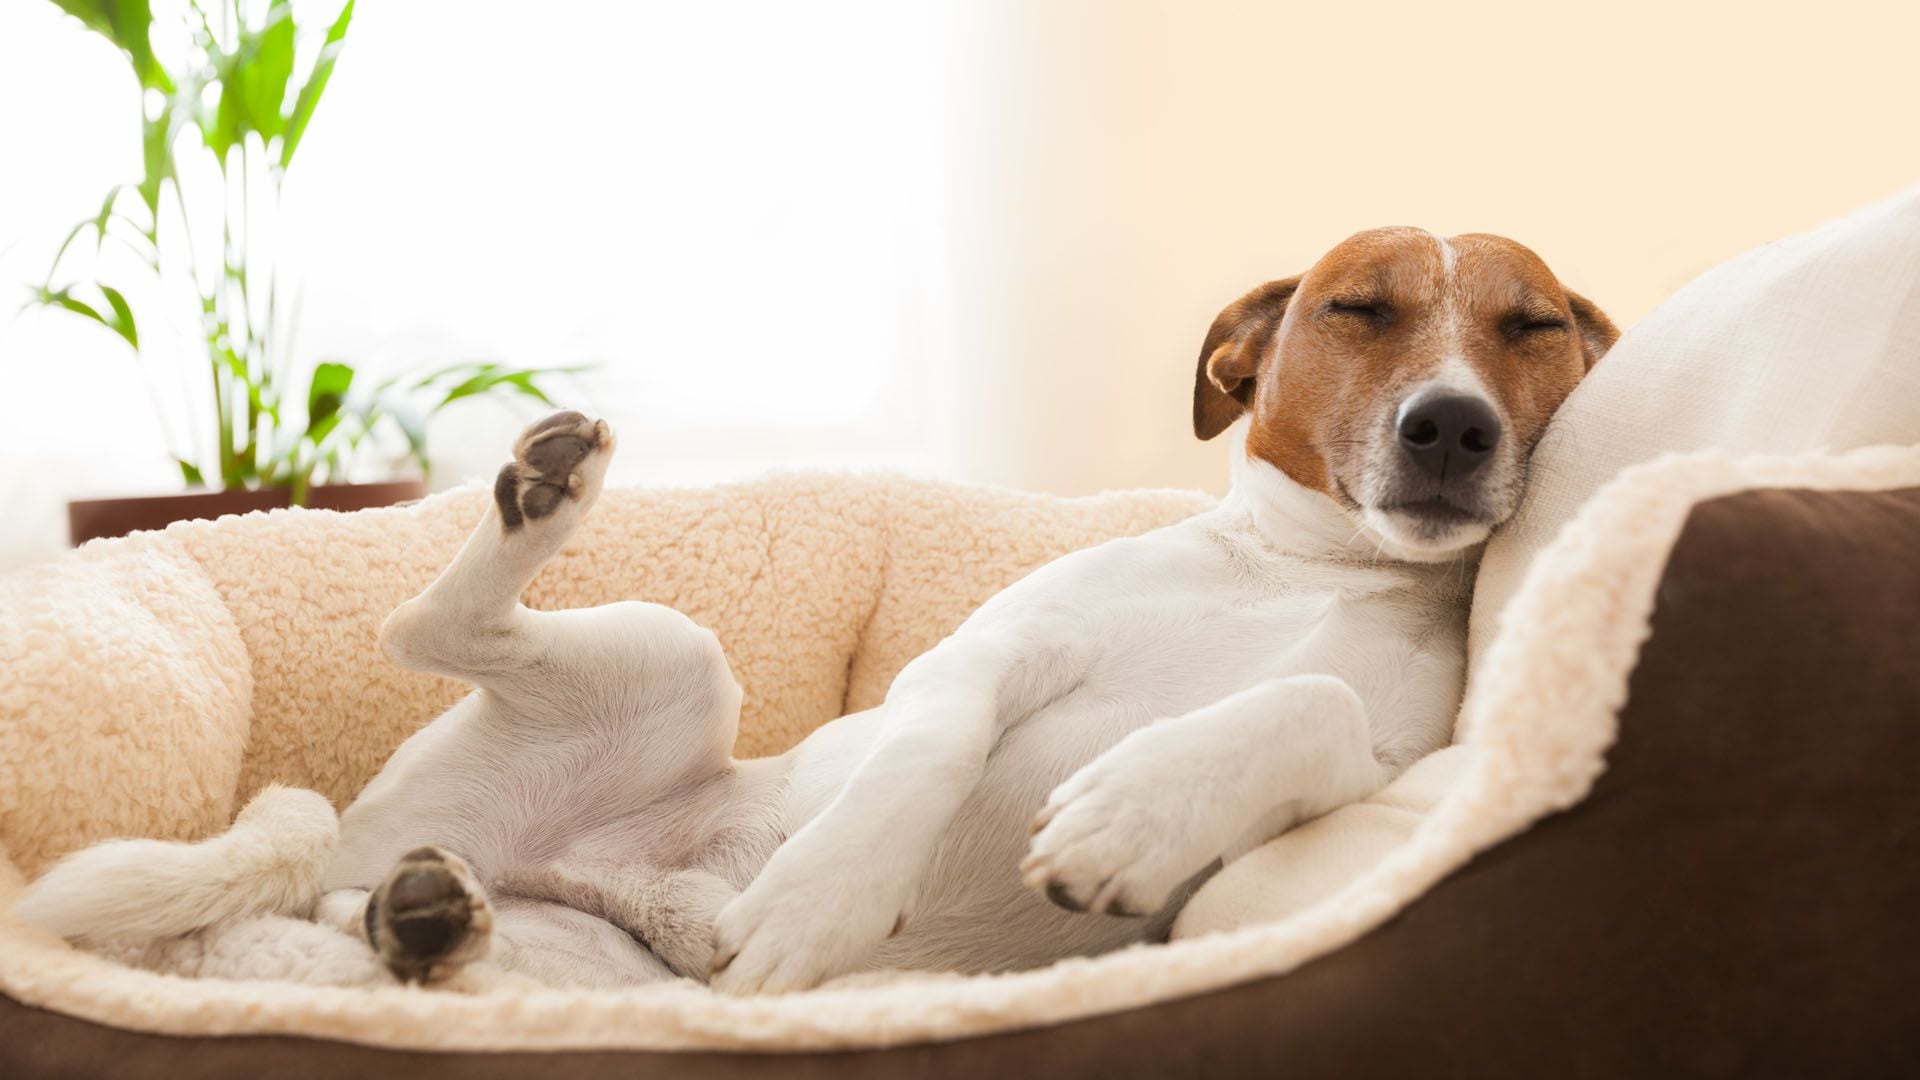 Los perros se acuestan de espaldas, panza arriba, por el mero placer de hacerlo, especialmente cuando se disponen a dormir una siesta